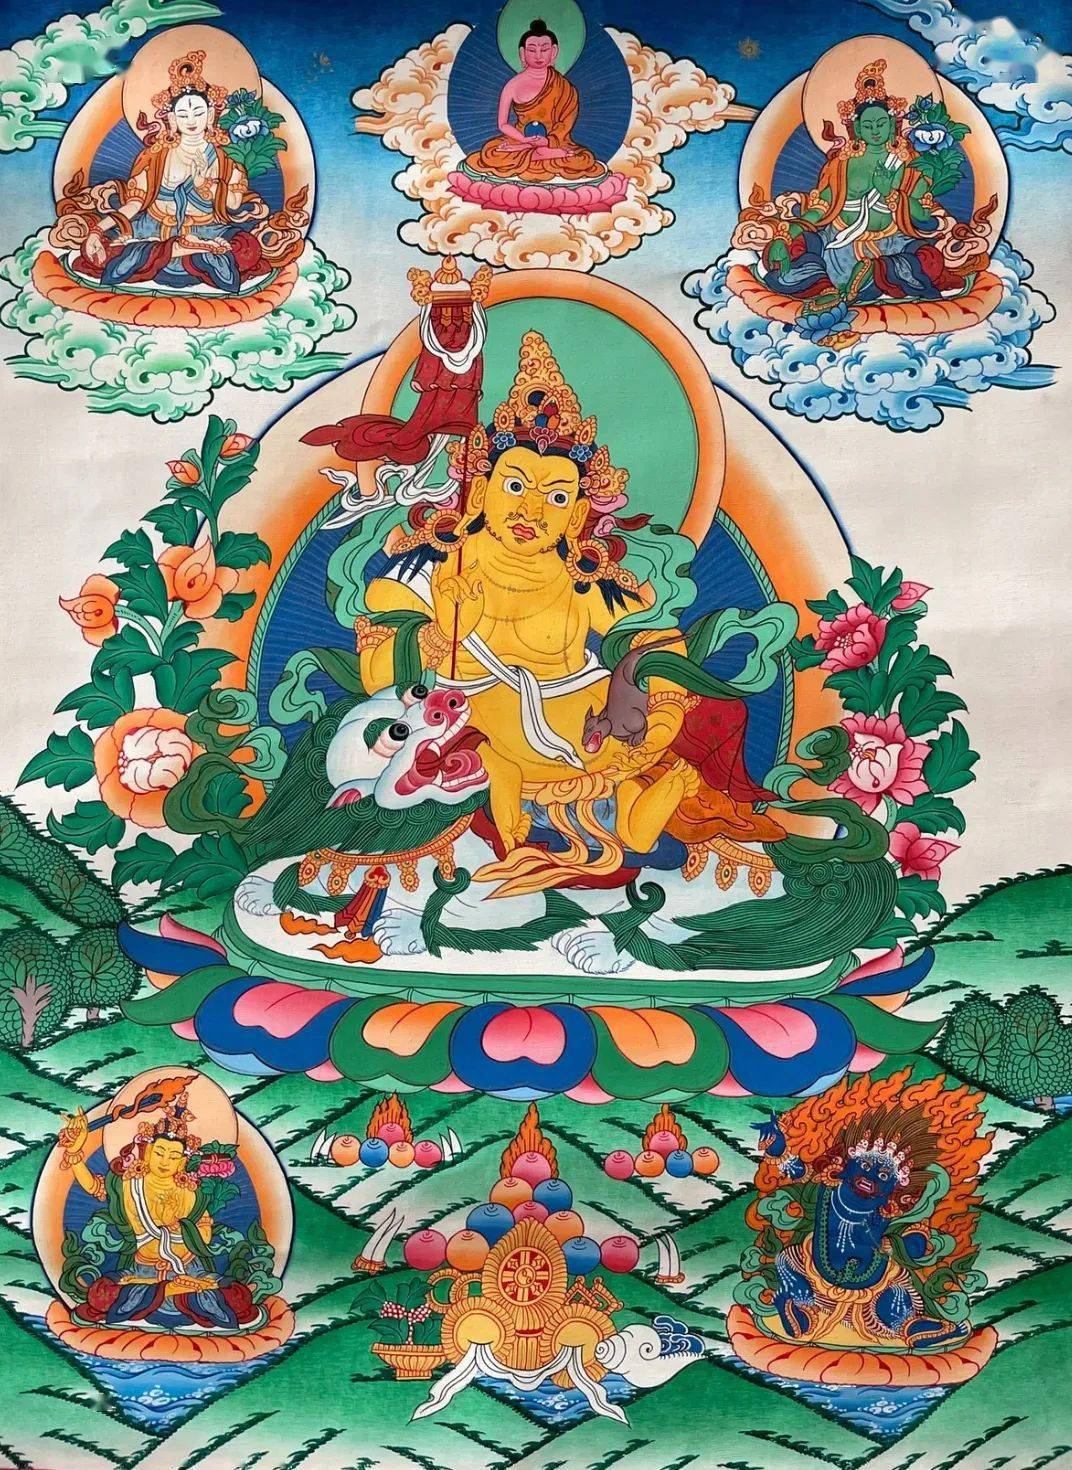 藏传佛教五路财神又名五姓财神,藏名为瞻巴拉色波,赞布禄嘎尔布,赞布